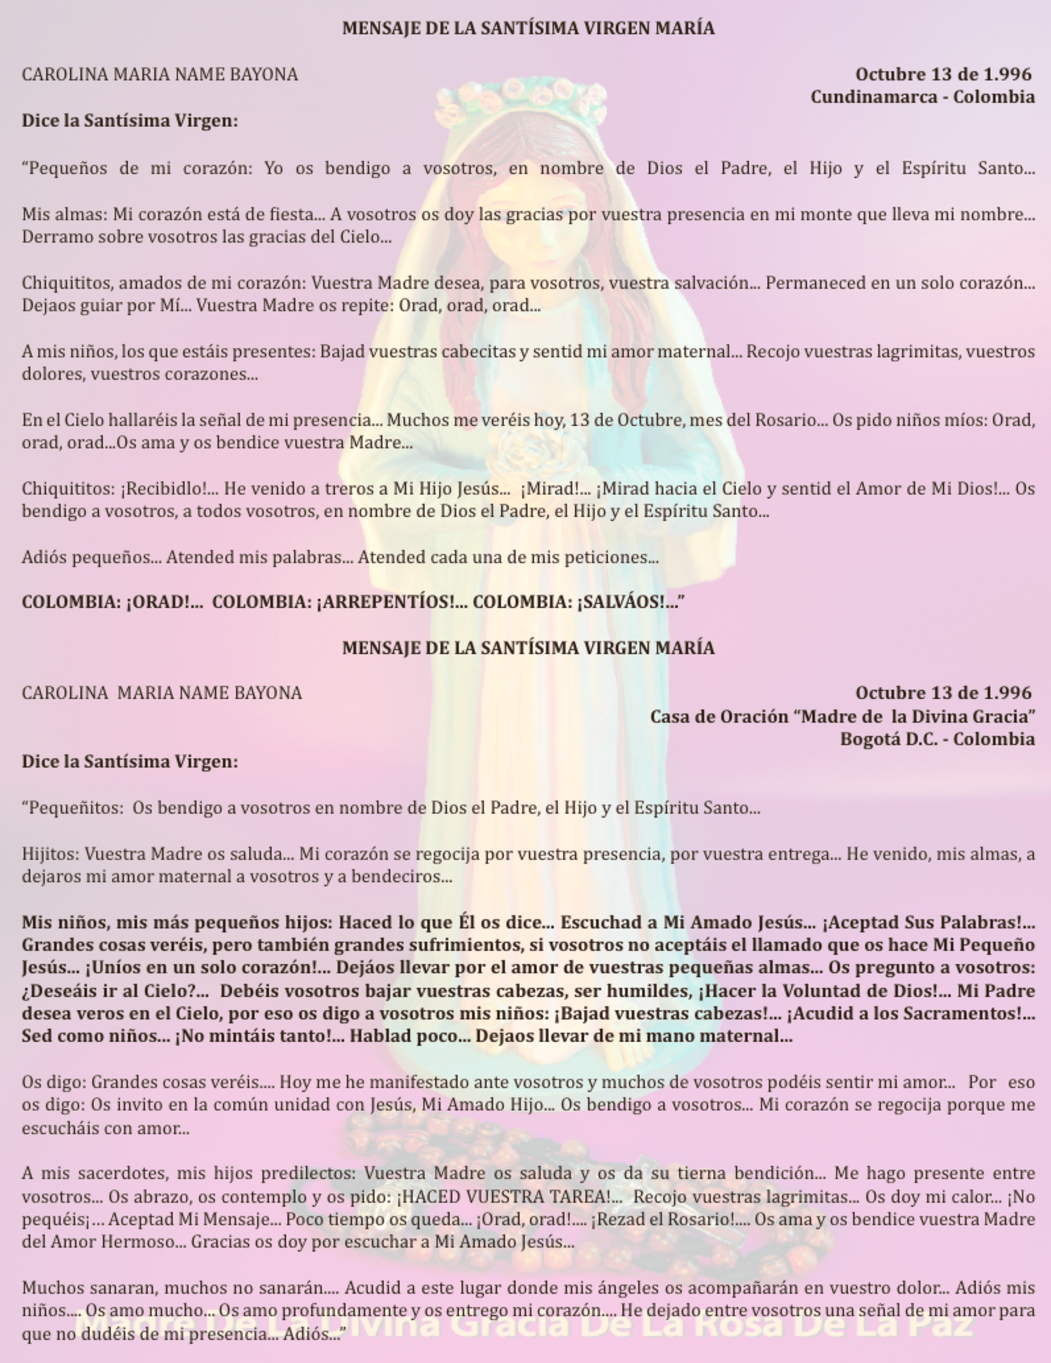 OCTUBRE 13 de 1996 Bogotá Colombia - mensaje de la virgen